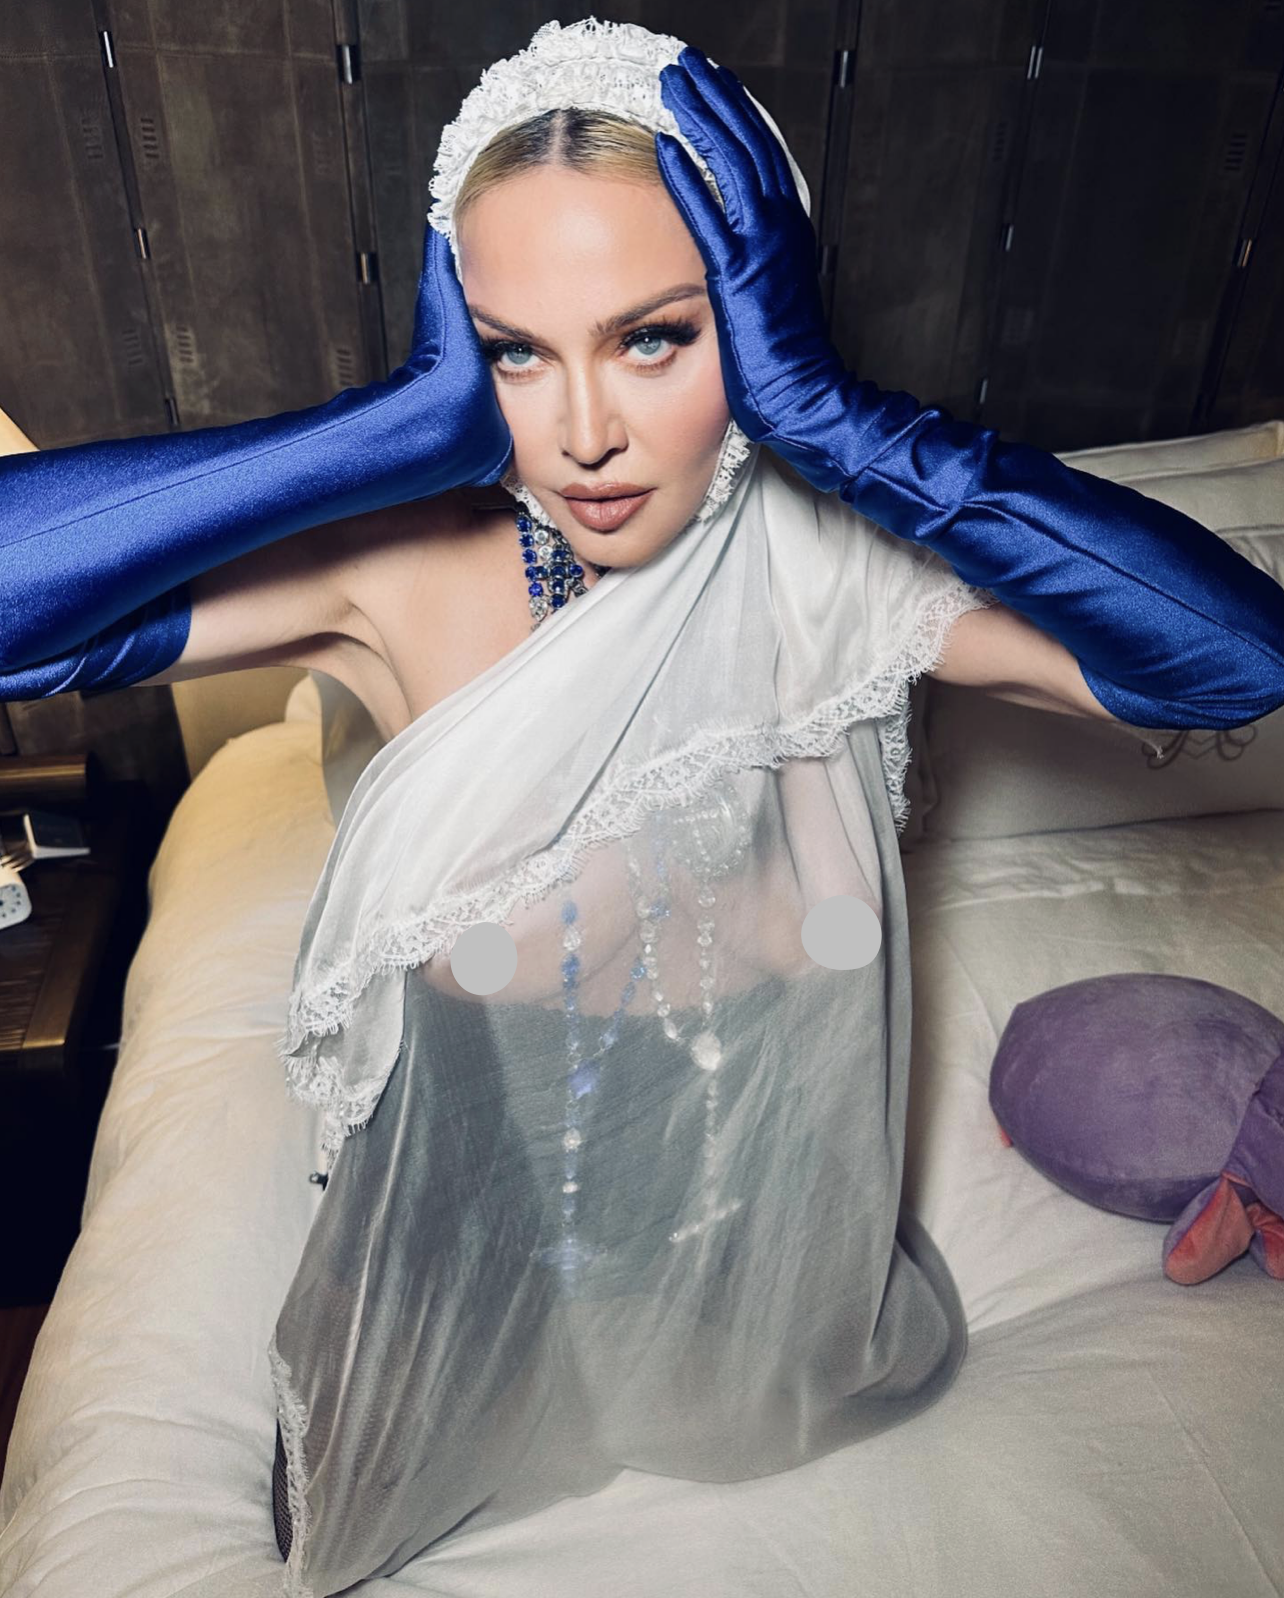 65-річна Мадонна засвітила груди в спокусливій фотосесії на ліжку: її назвали "іконою" 